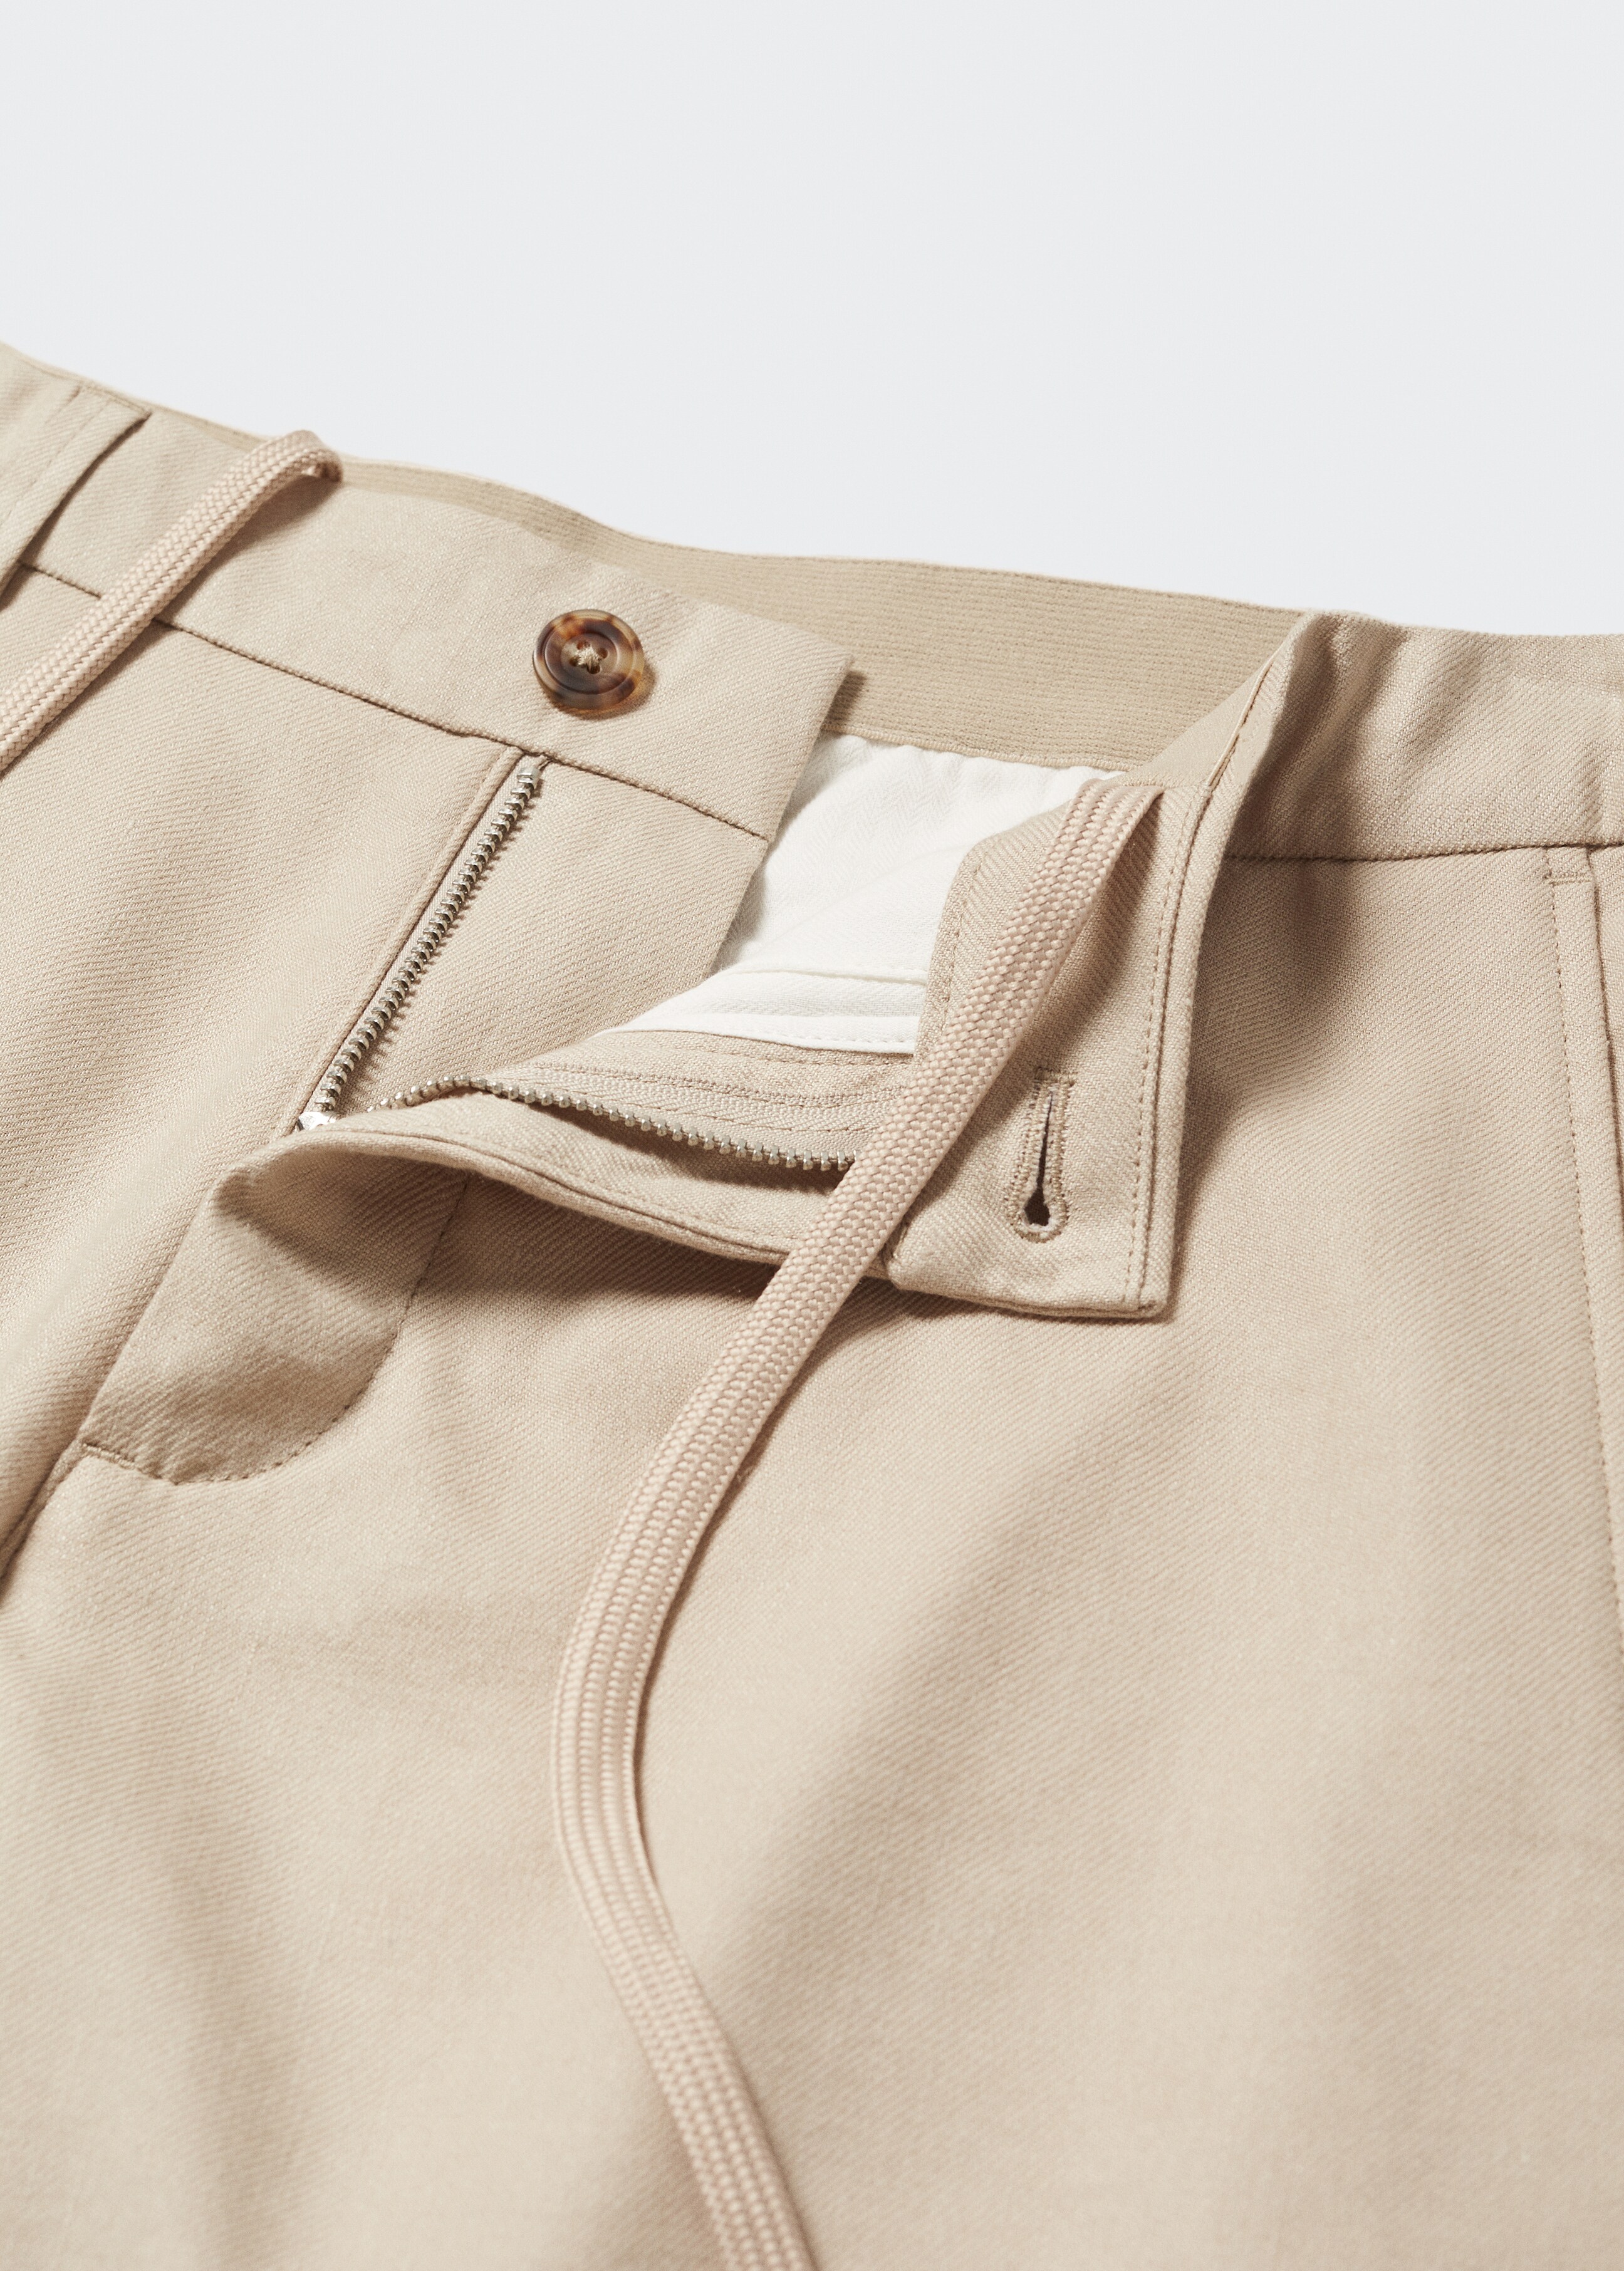 Pantalón slim fit lino cordón interior - Detalle del artículo 8